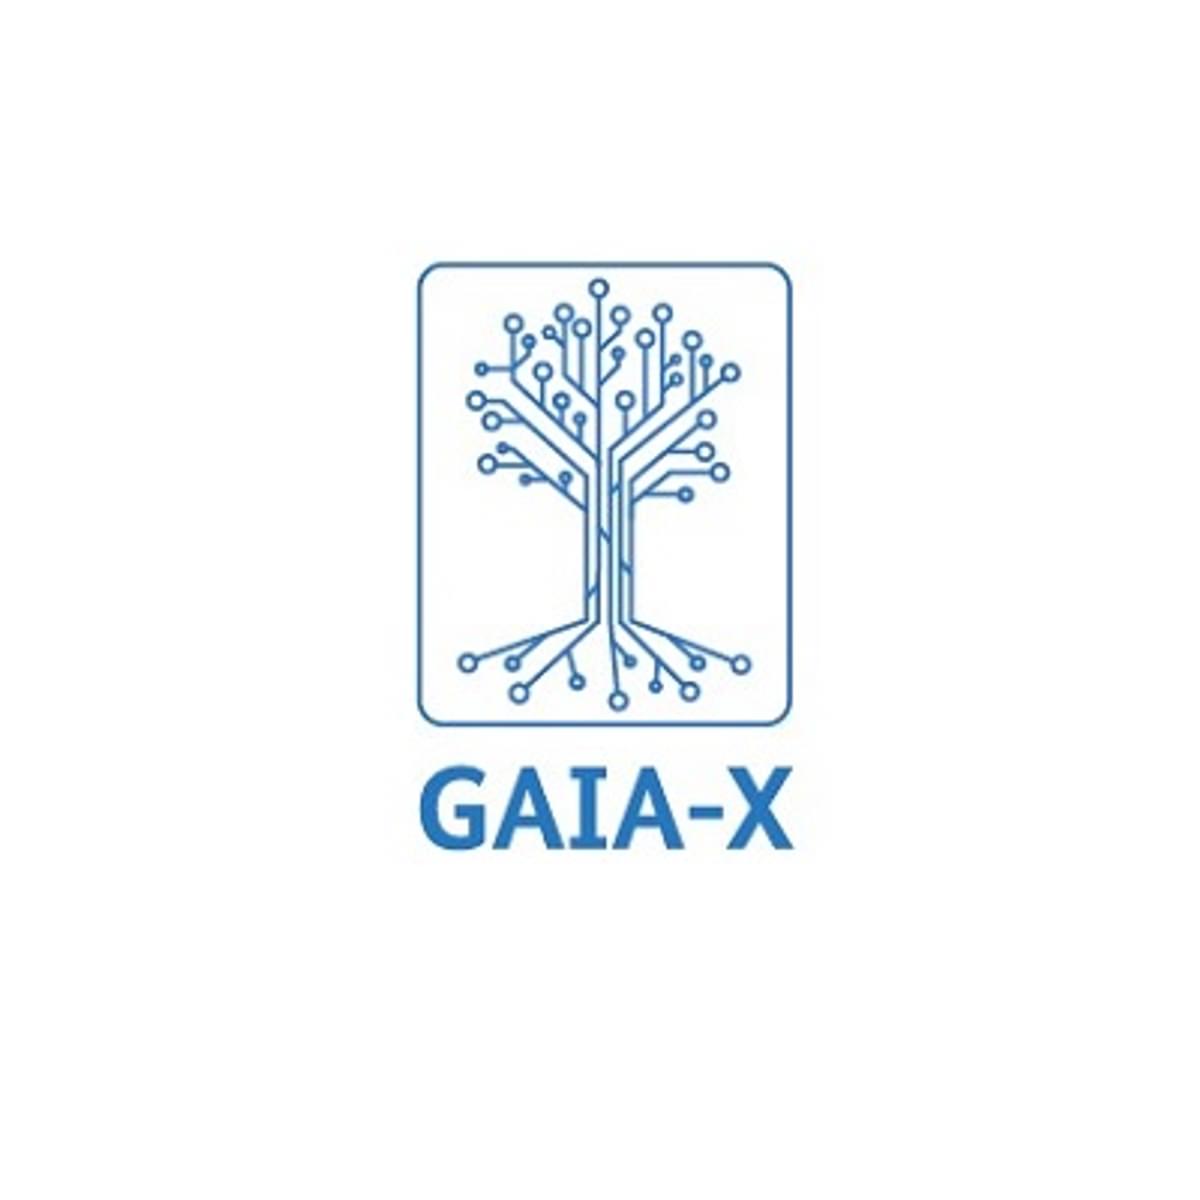 GAIA-X laat ruim tweehonderd tech bedrijven toe met opvallende namen image